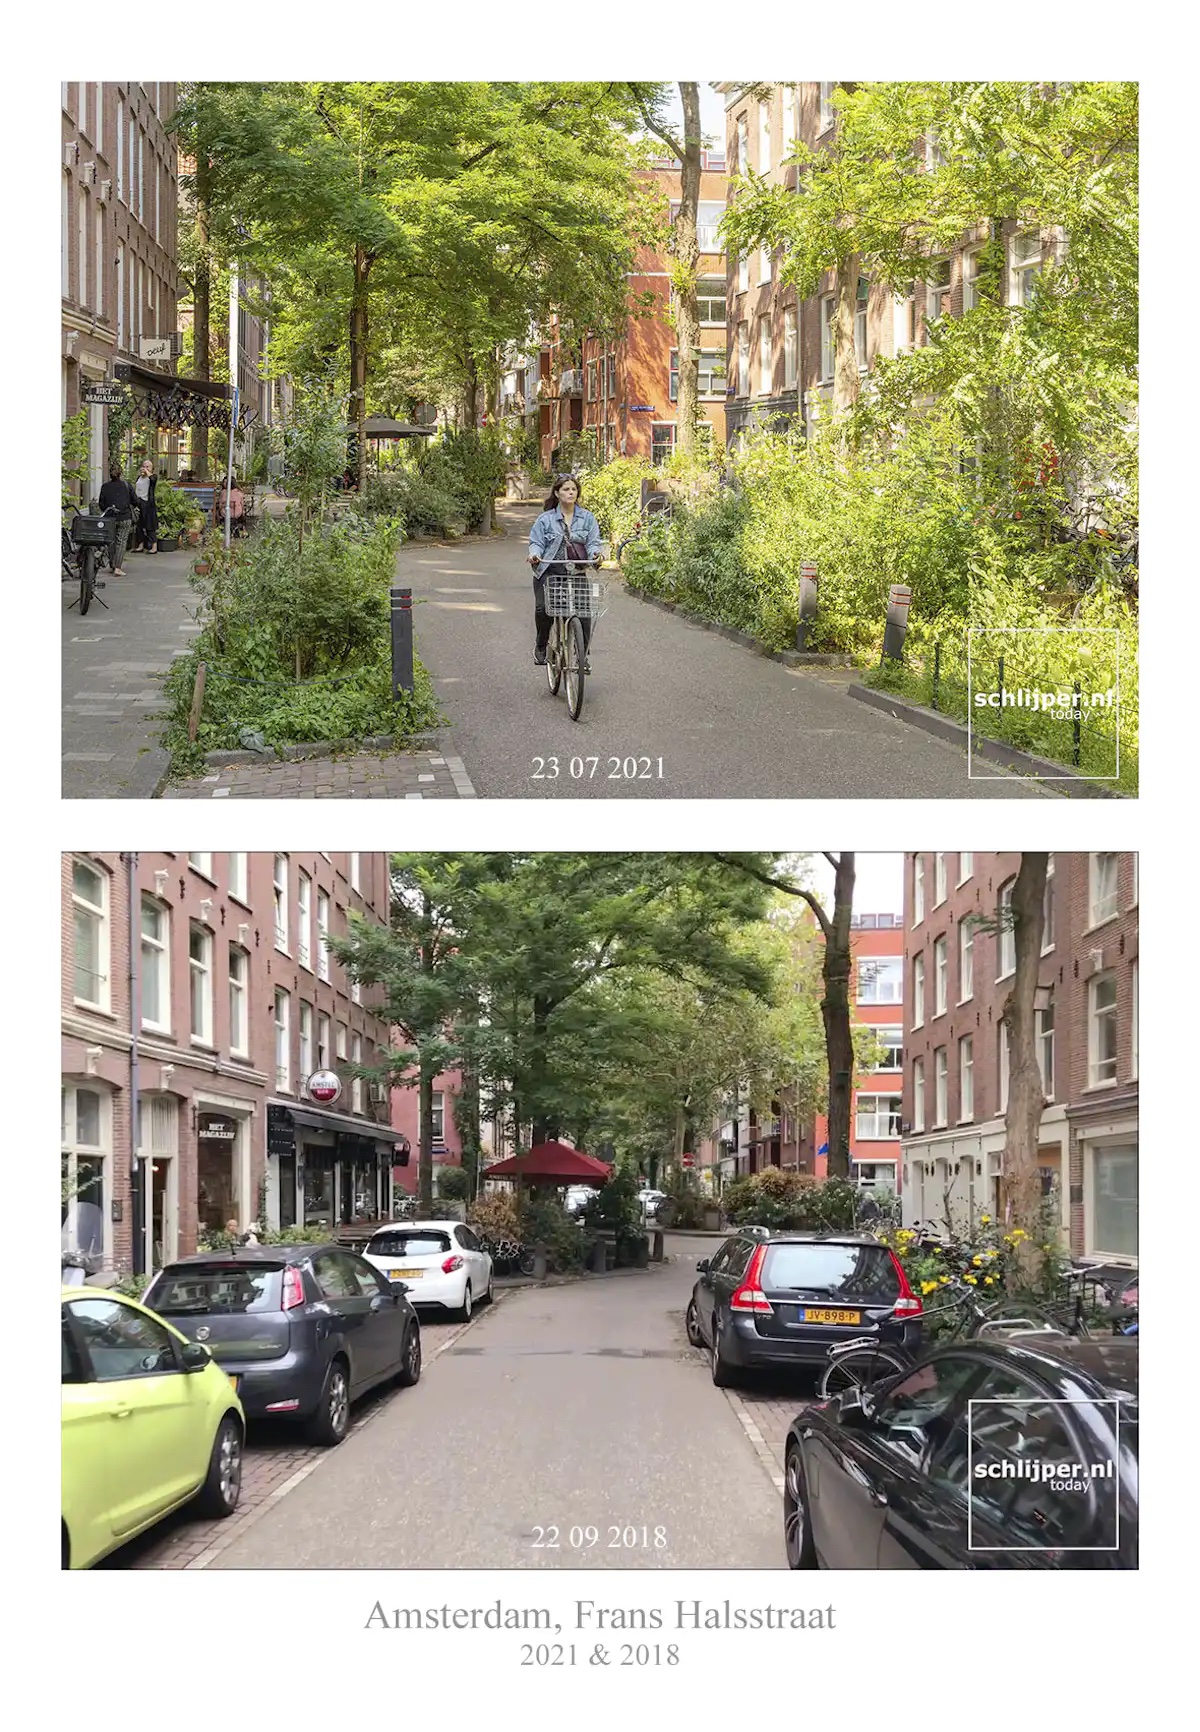 Réaménagement de rue favorable à la santé, à Amsterdam. Thomas Schlijper, 2021 ; fil Twitter Stein Van Oosteren